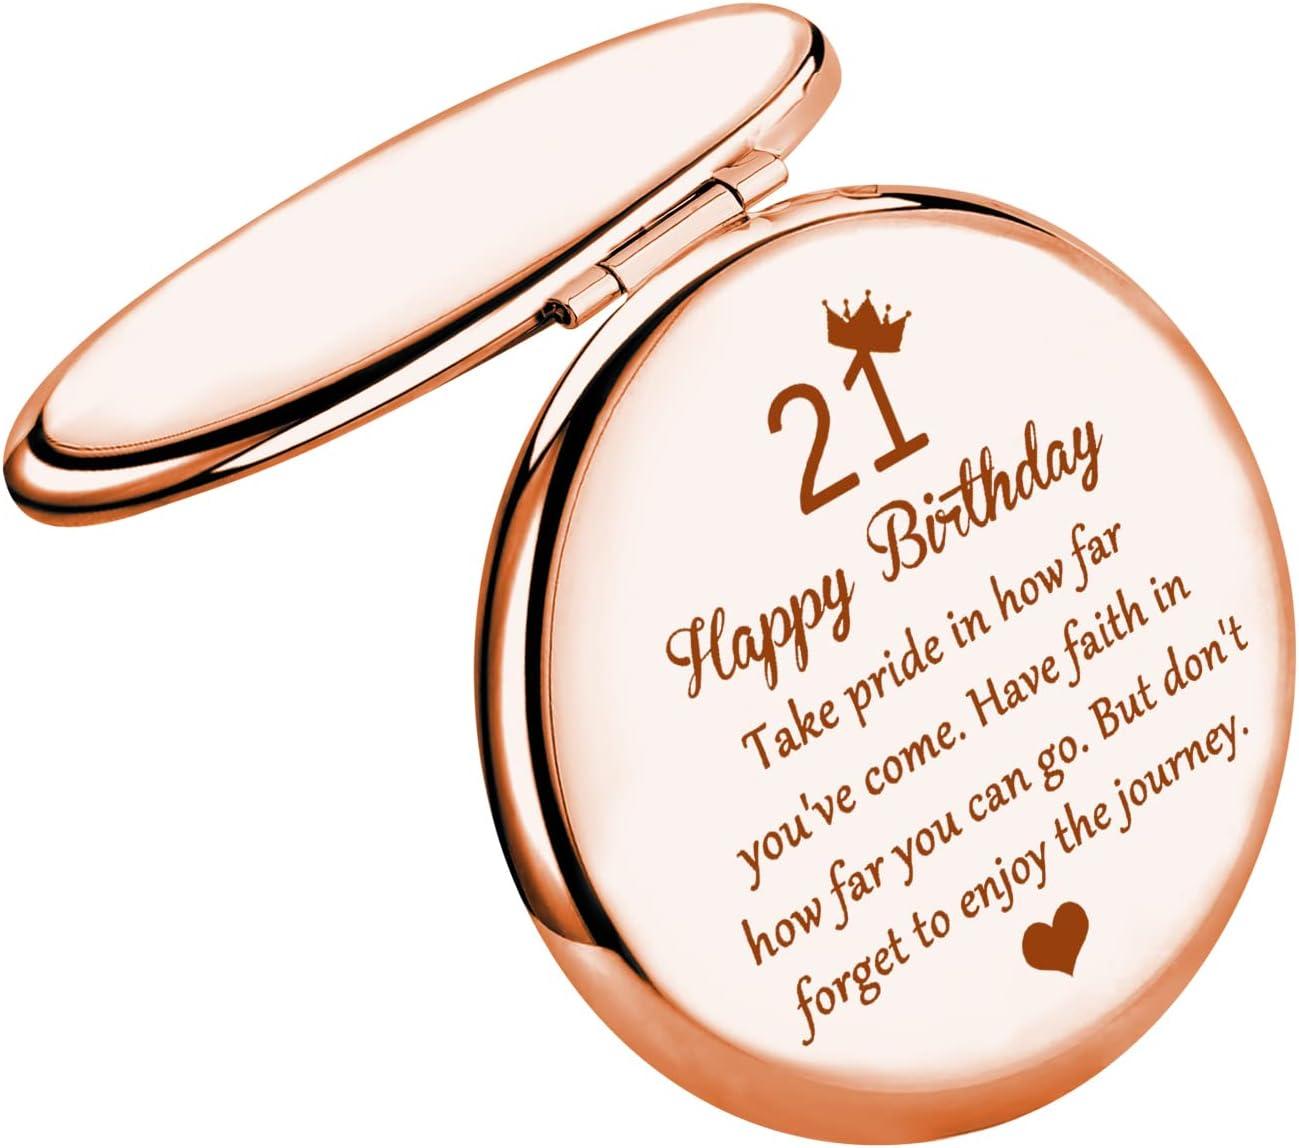 21st Birthday Party Ideas: 21 Ways to Celebrate This Milestone